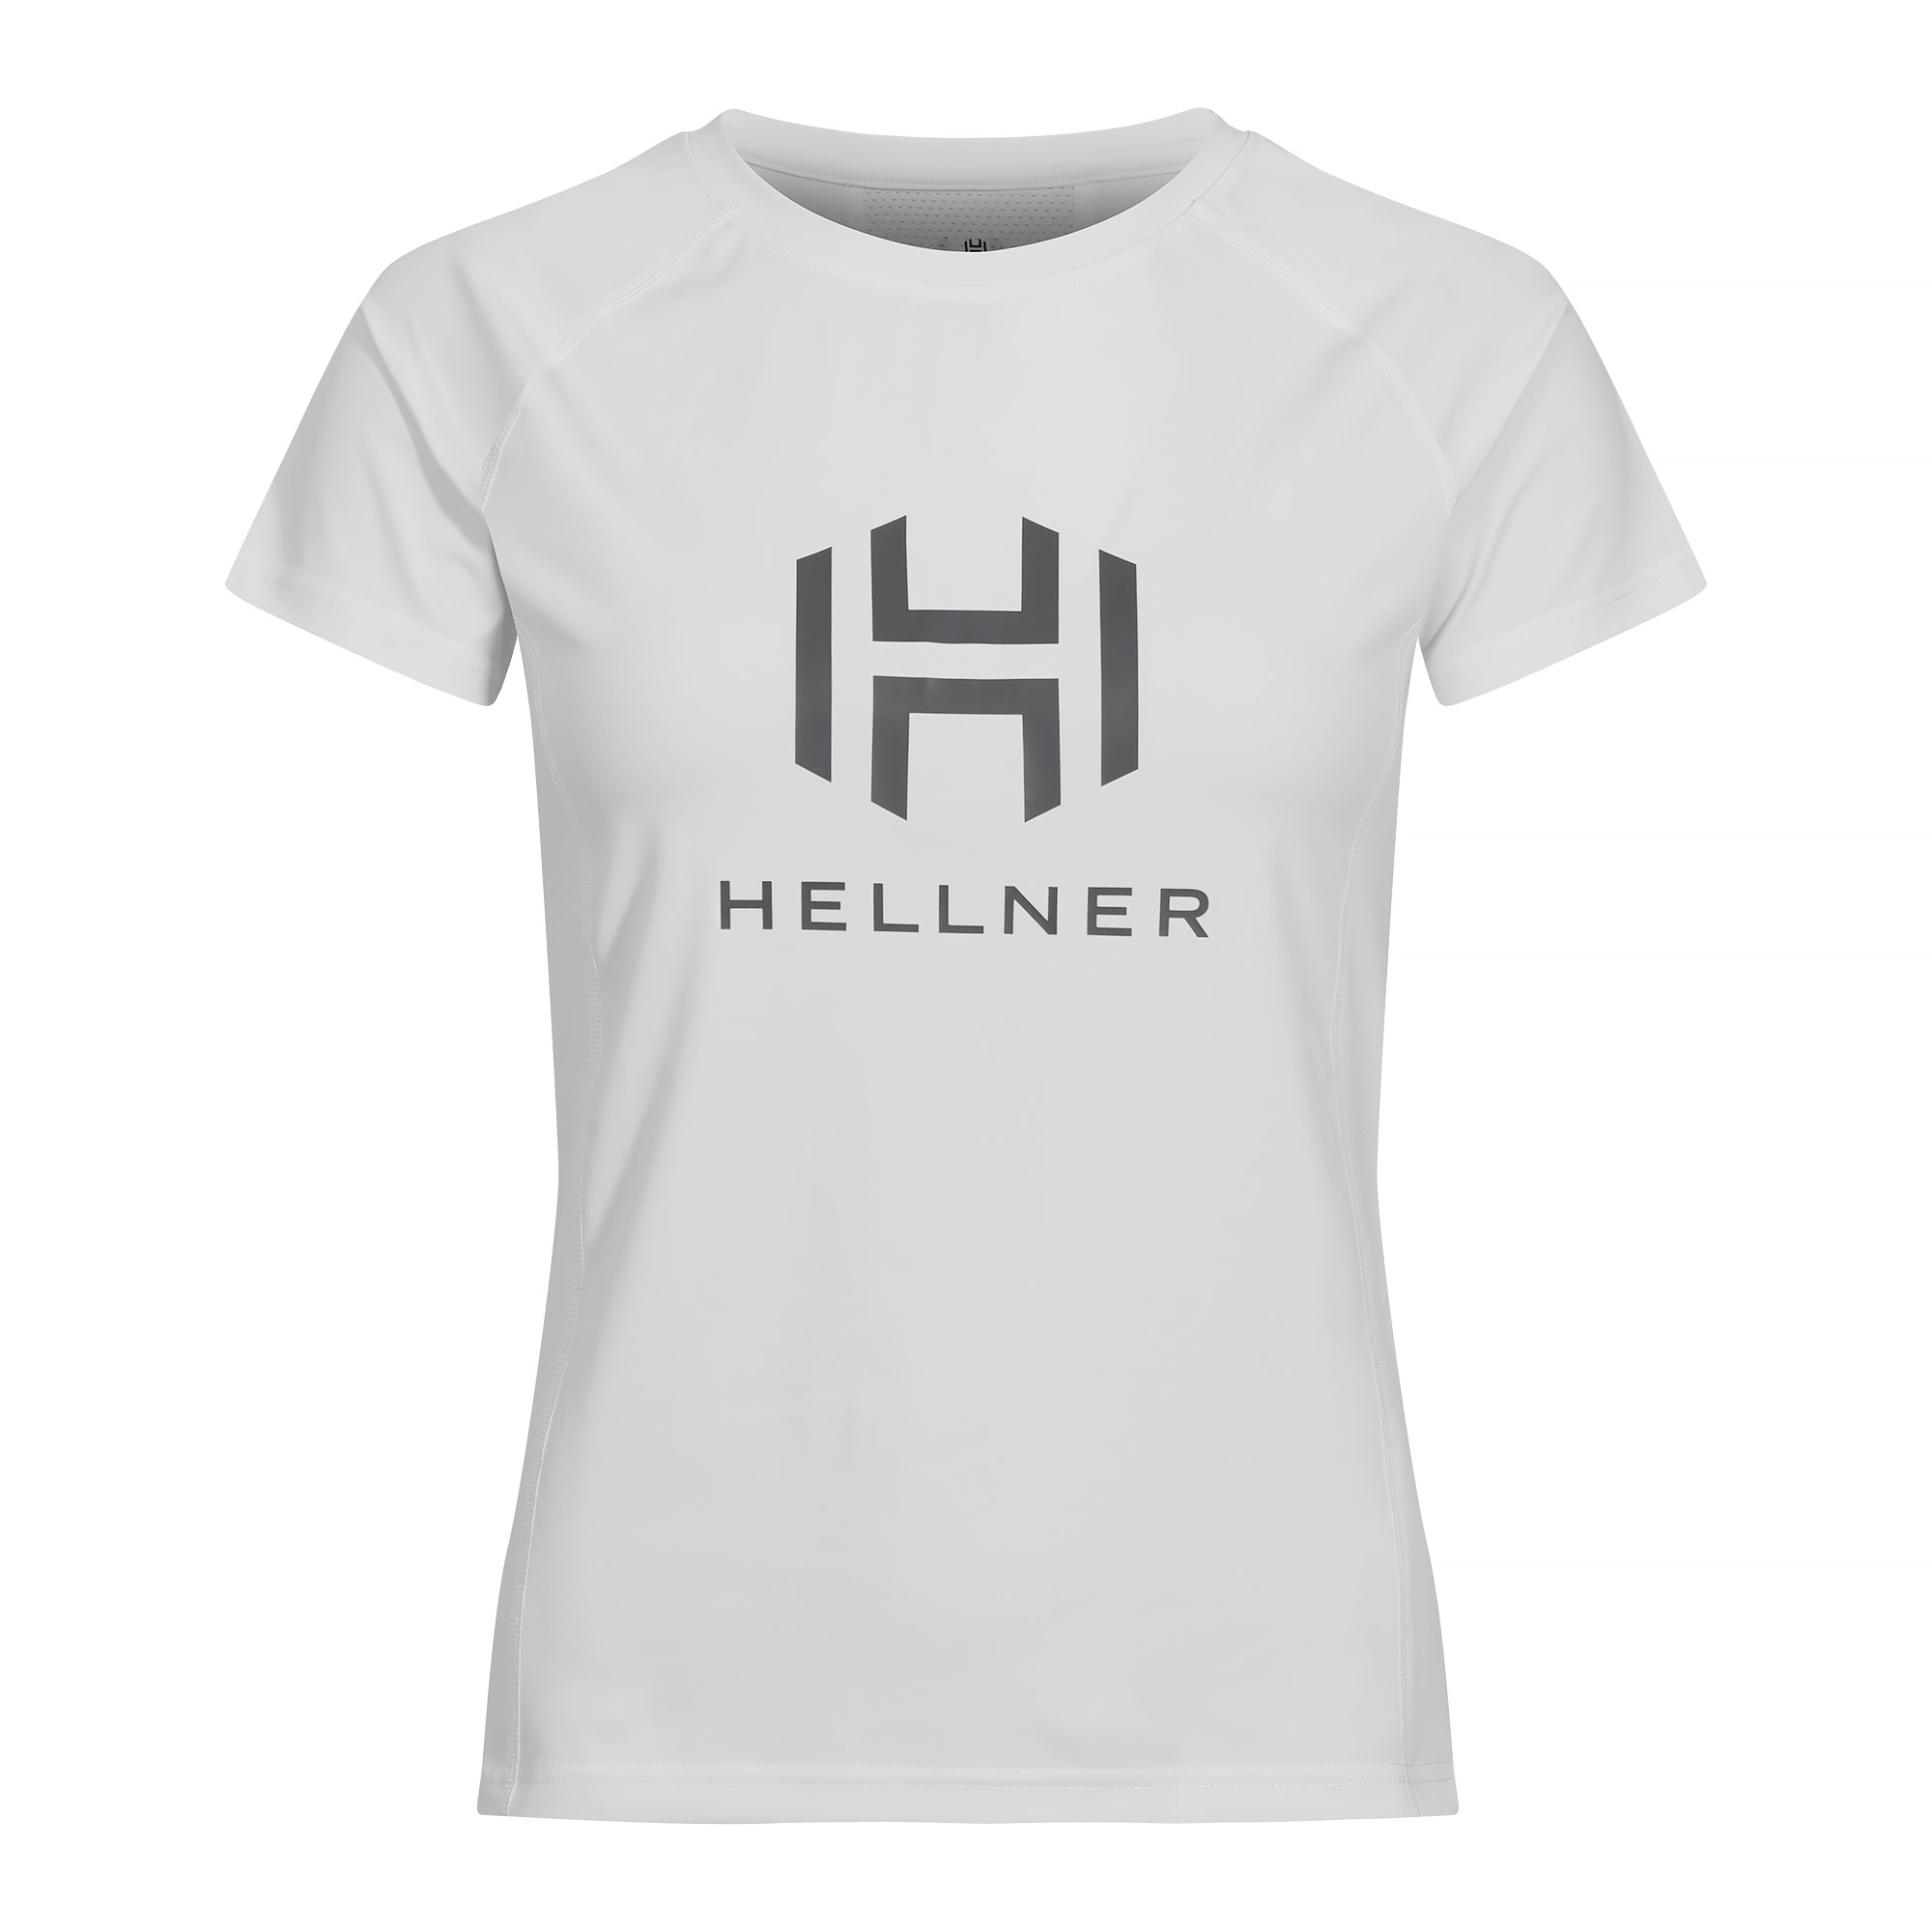 Hellner Hellner Tee Women’s Nimbus Cloud